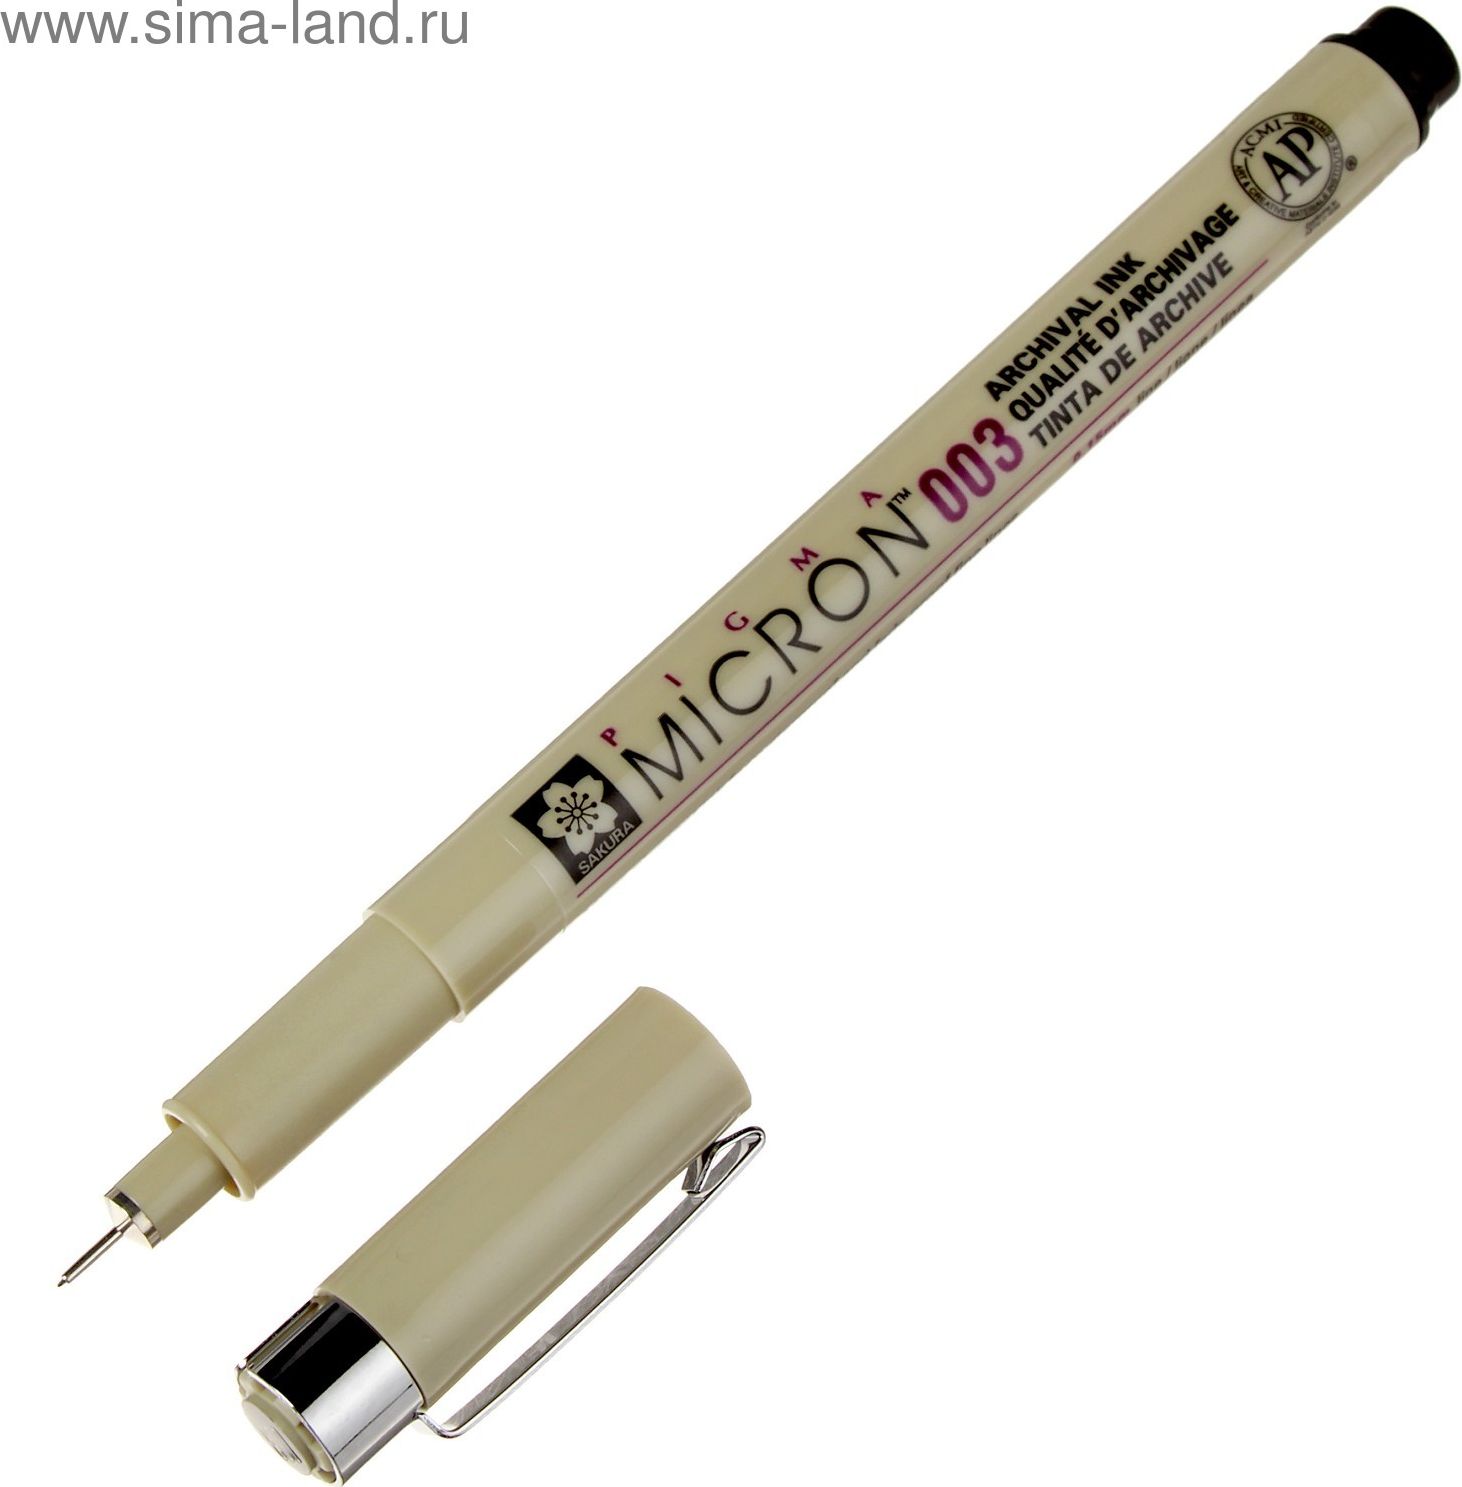 

Ручка капиллярная для черчения Sakura «Pigma Micron»